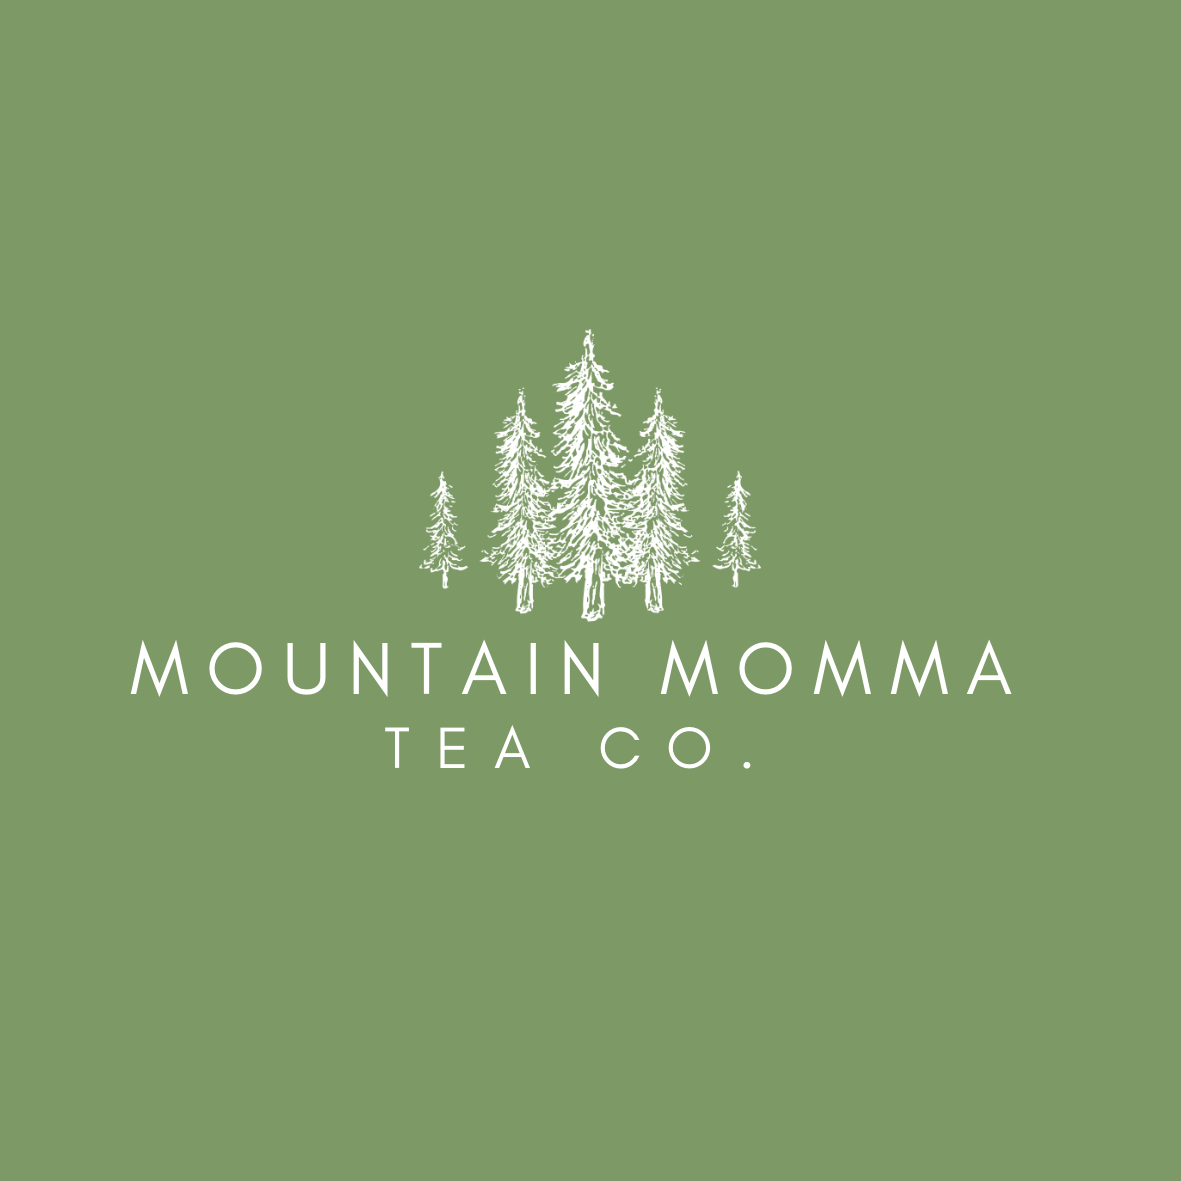 Mountain Momma Tea Co.